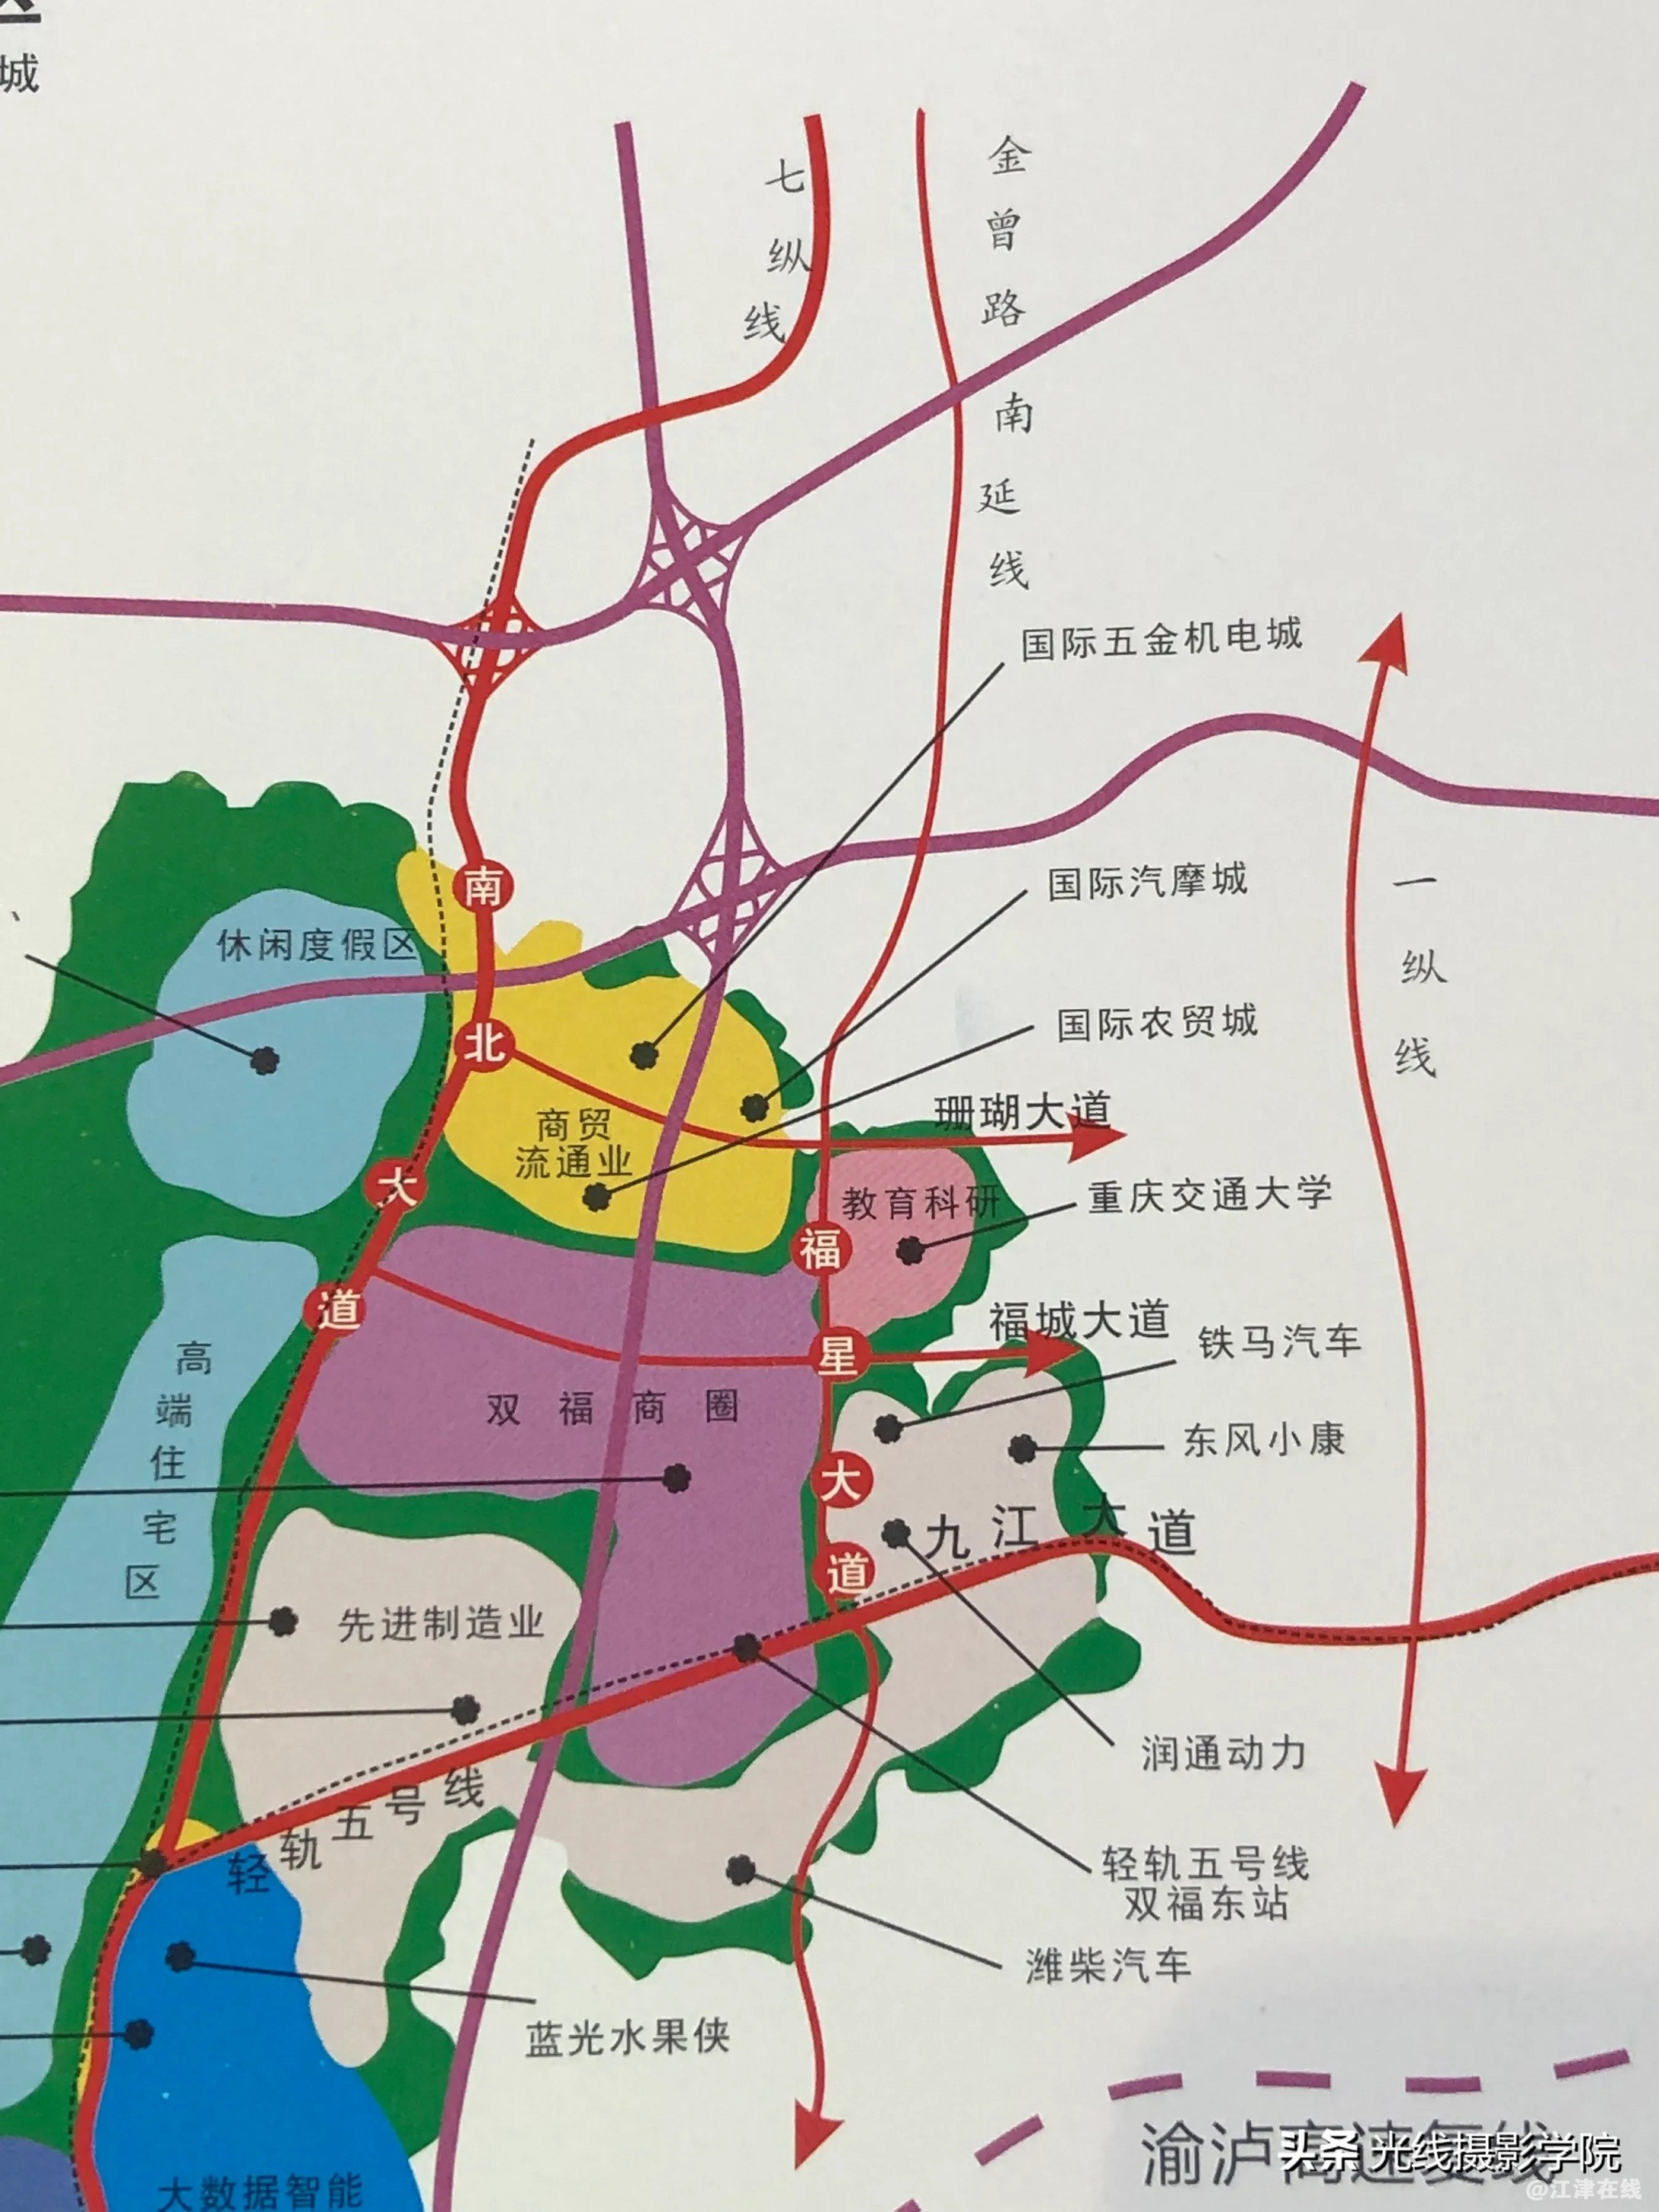 我去渝洽会参观了江津区的展台被双福新区的规划图所吸引了